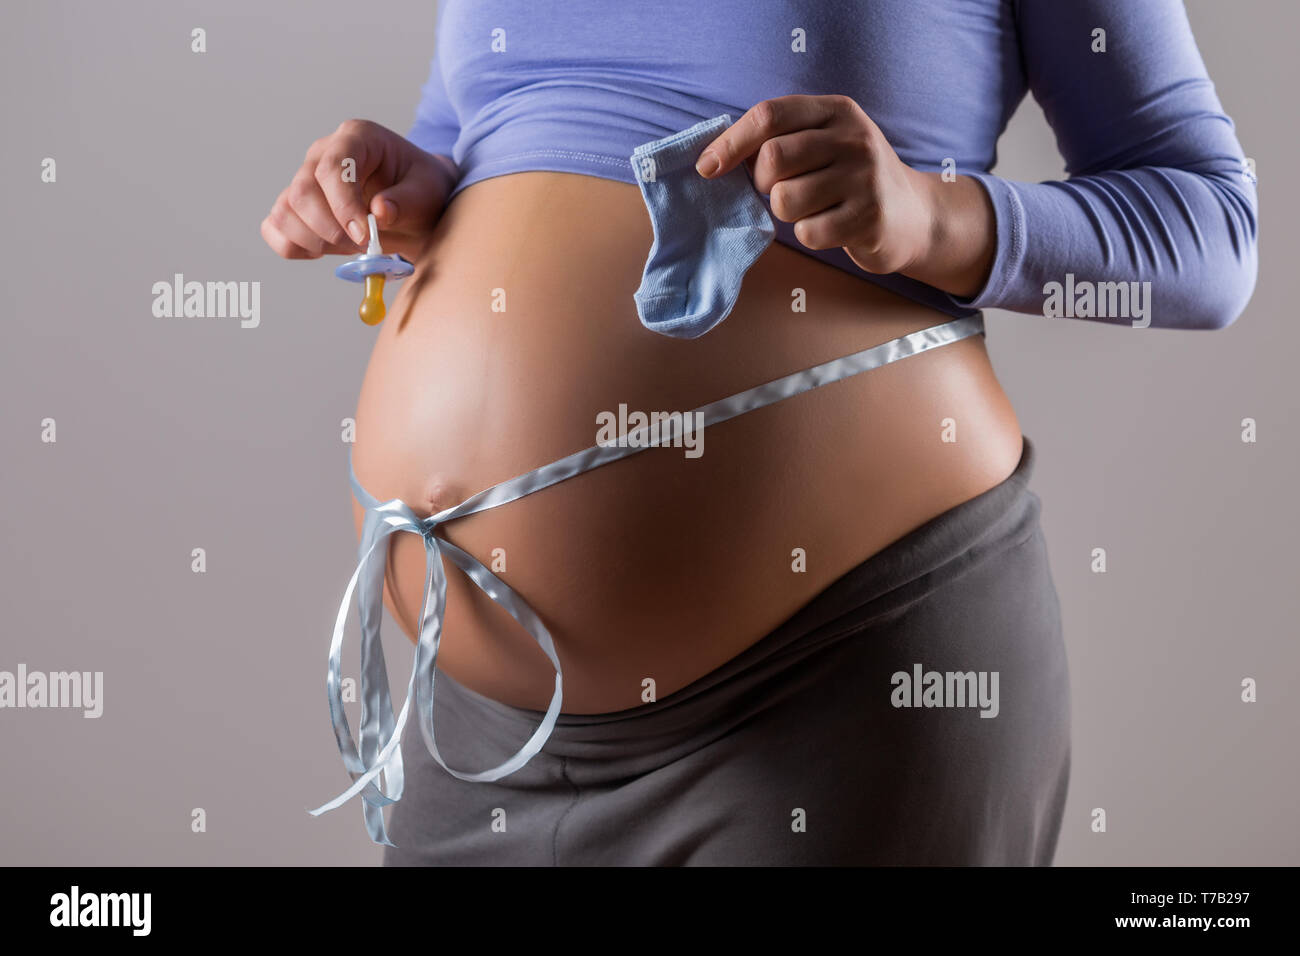 Immagine del ventre della donna incinta con un nastro blu succhietto holding e le calze per bambino su sfondo grigio. Foto Stock